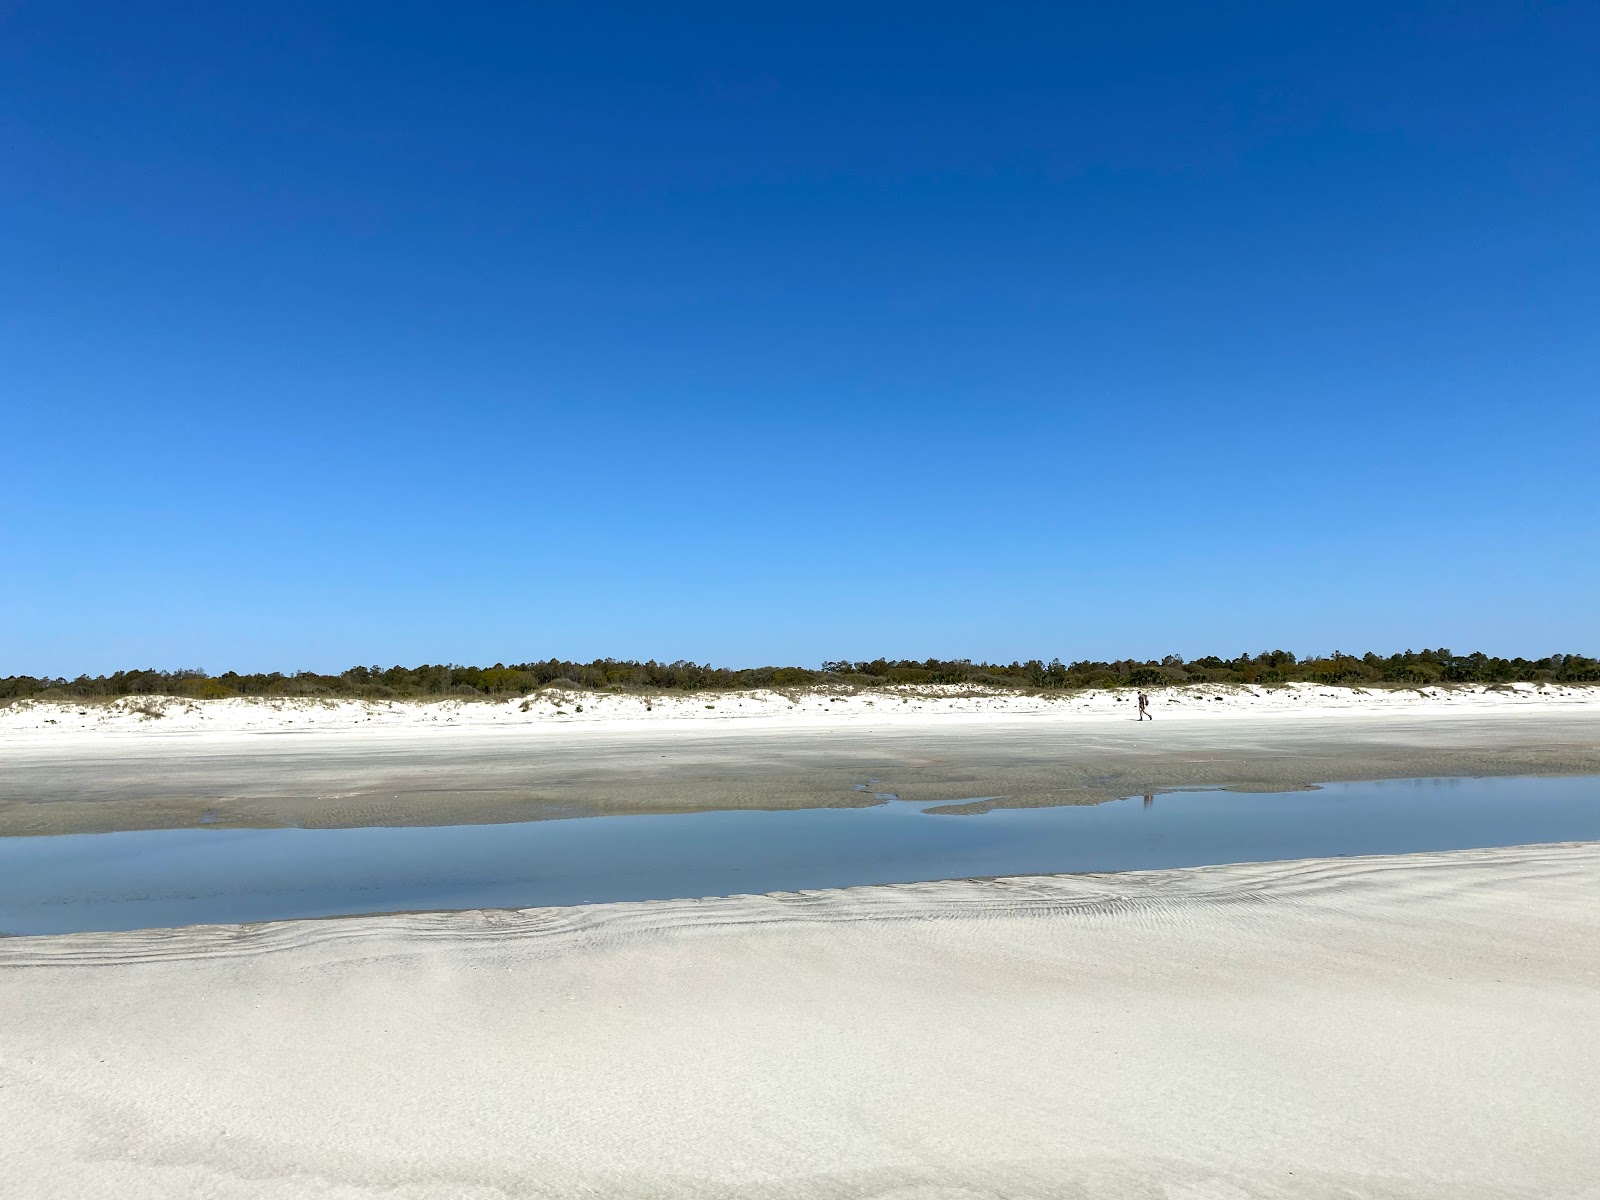 Foto av Stafford beach med lång rak strand